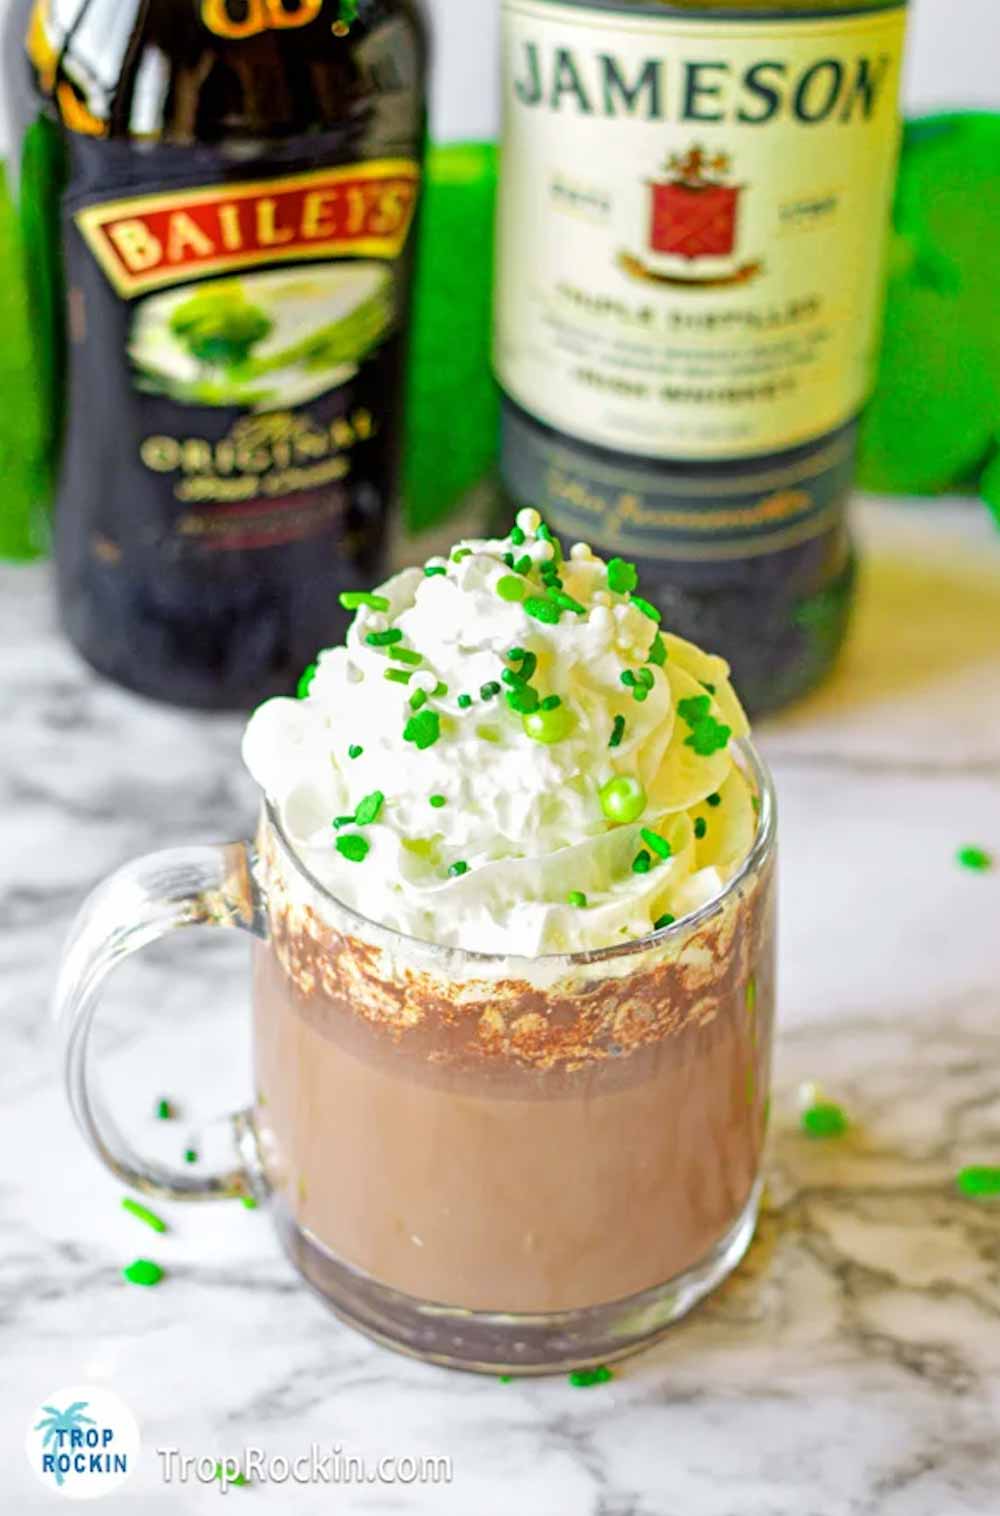 Irish hot chocolate in clear mug with Baileys Irish Cream and Jameson Irish Whiskey bottles in background